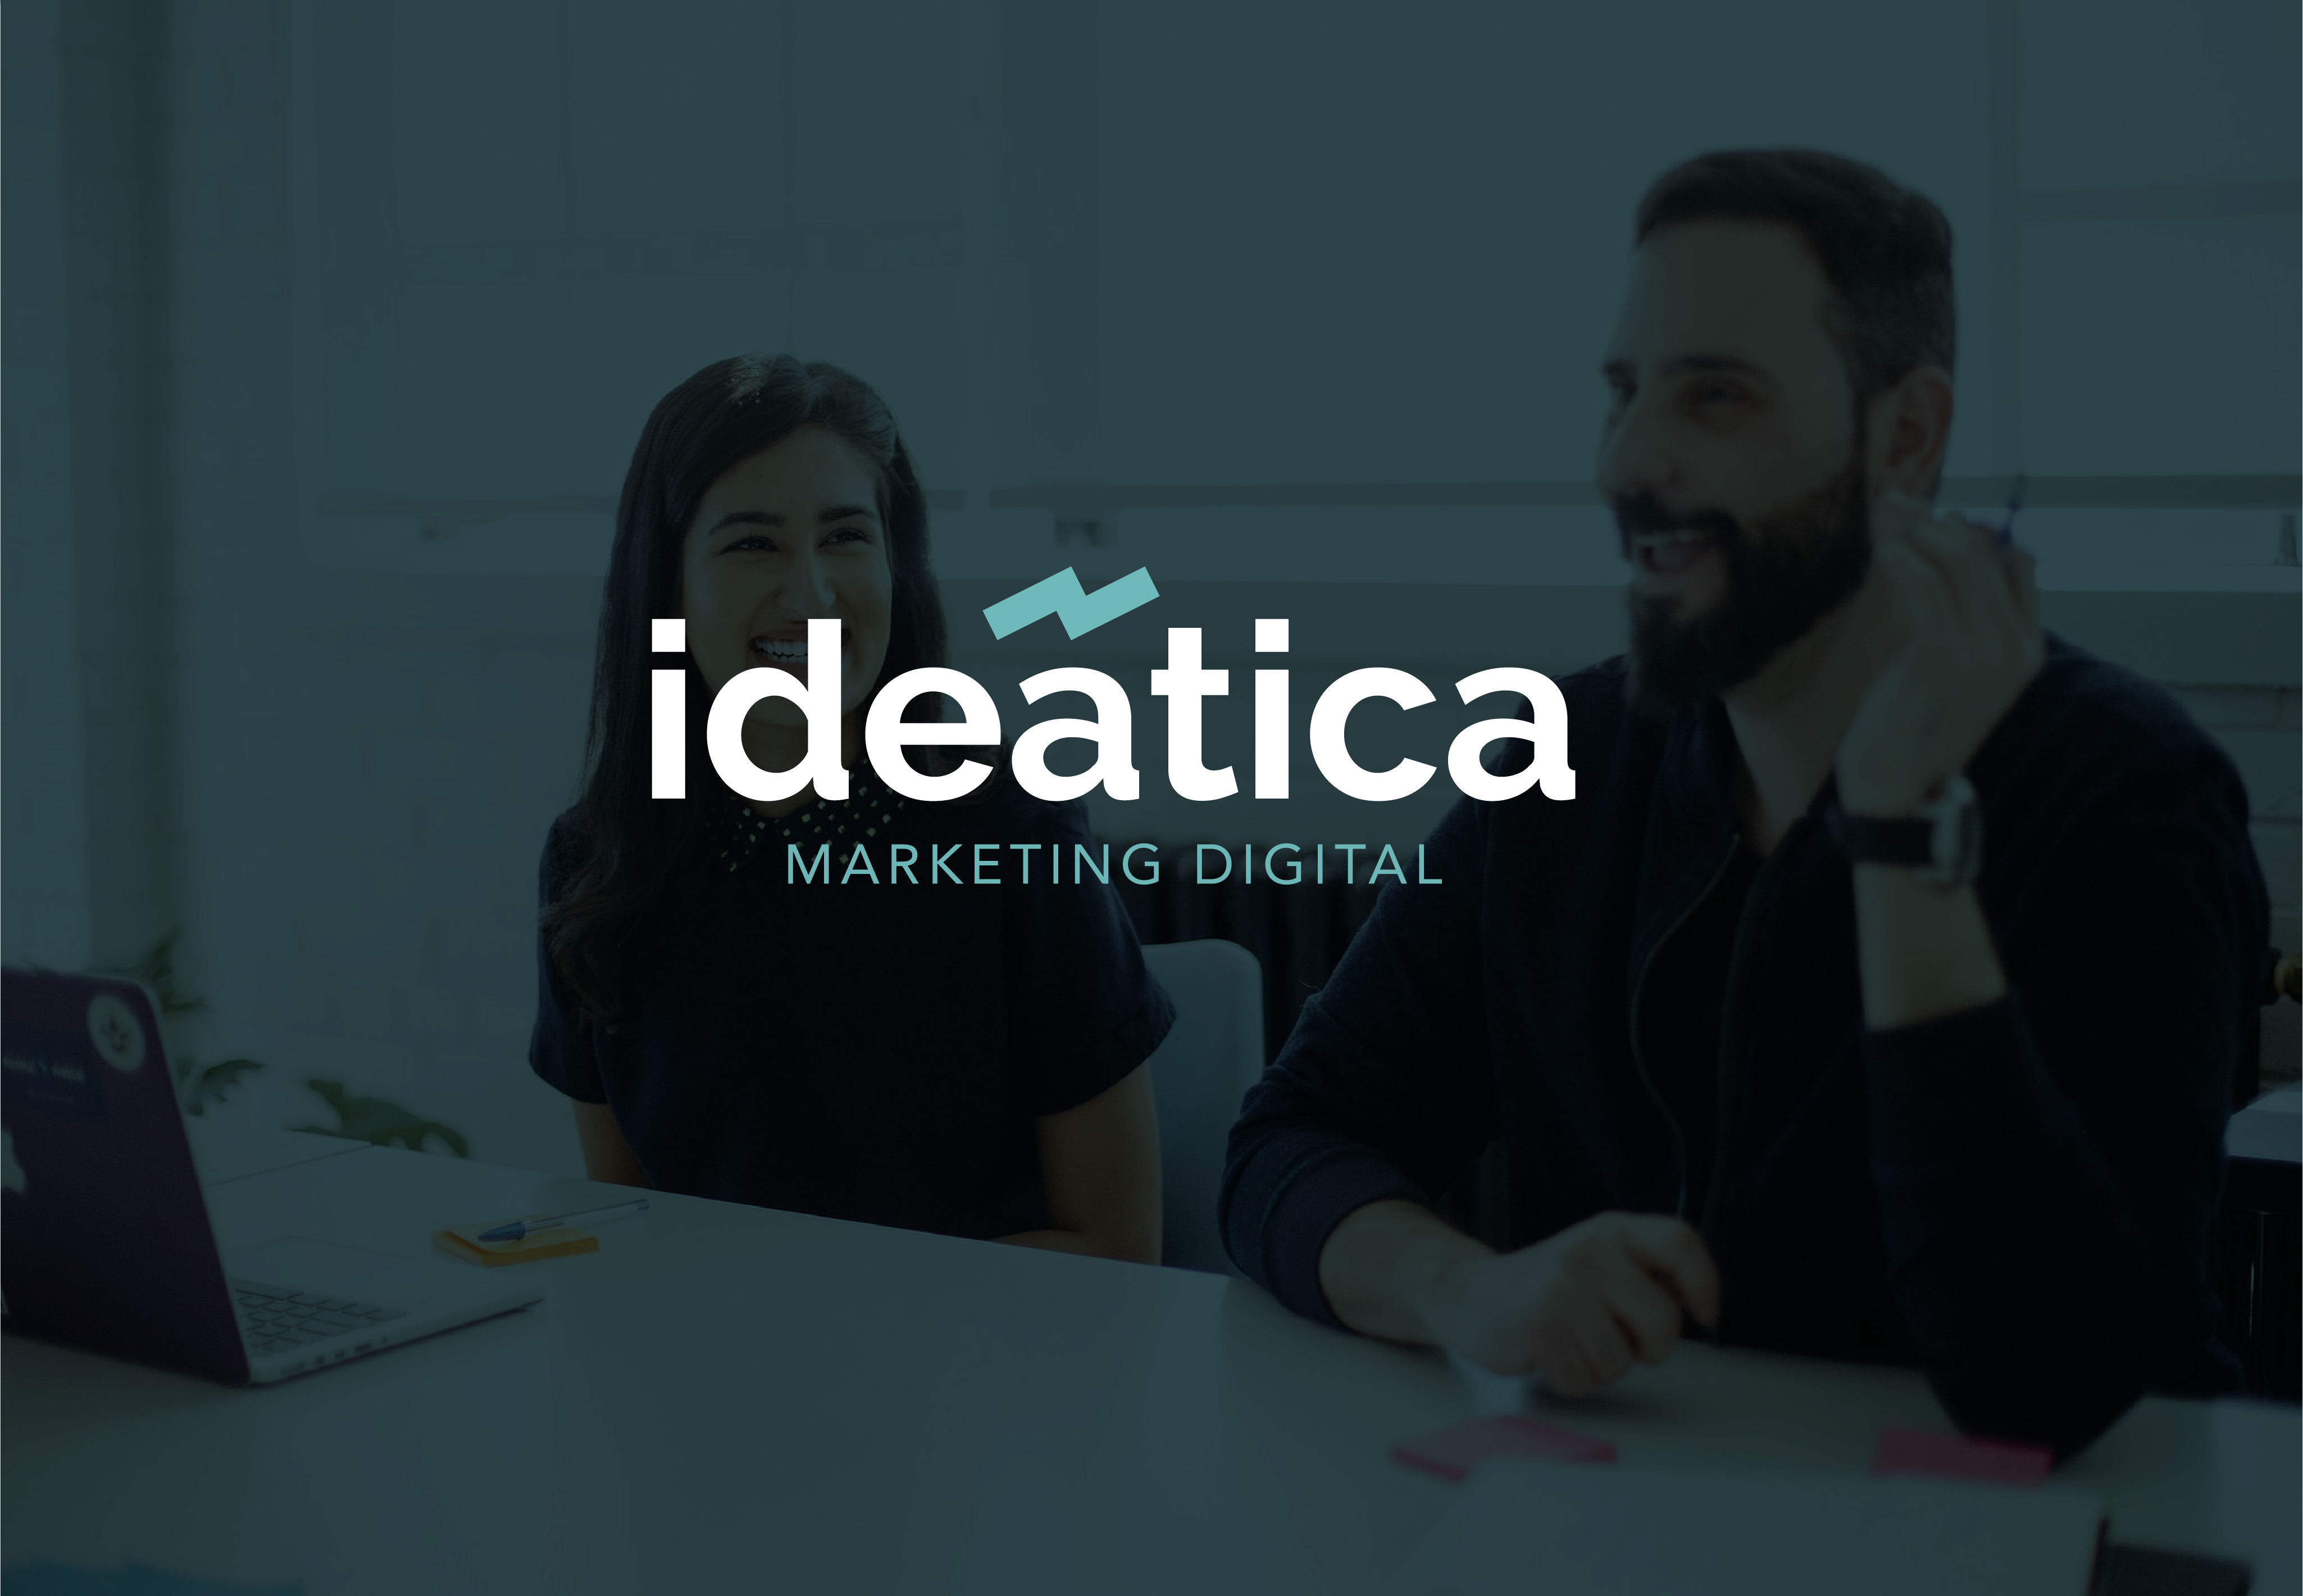 Imagen que muestra logotipo de agencia de marketing, "ideática". Como fondo de la imagen una fotografía de una situación de trabajo en equipo de la agencia.